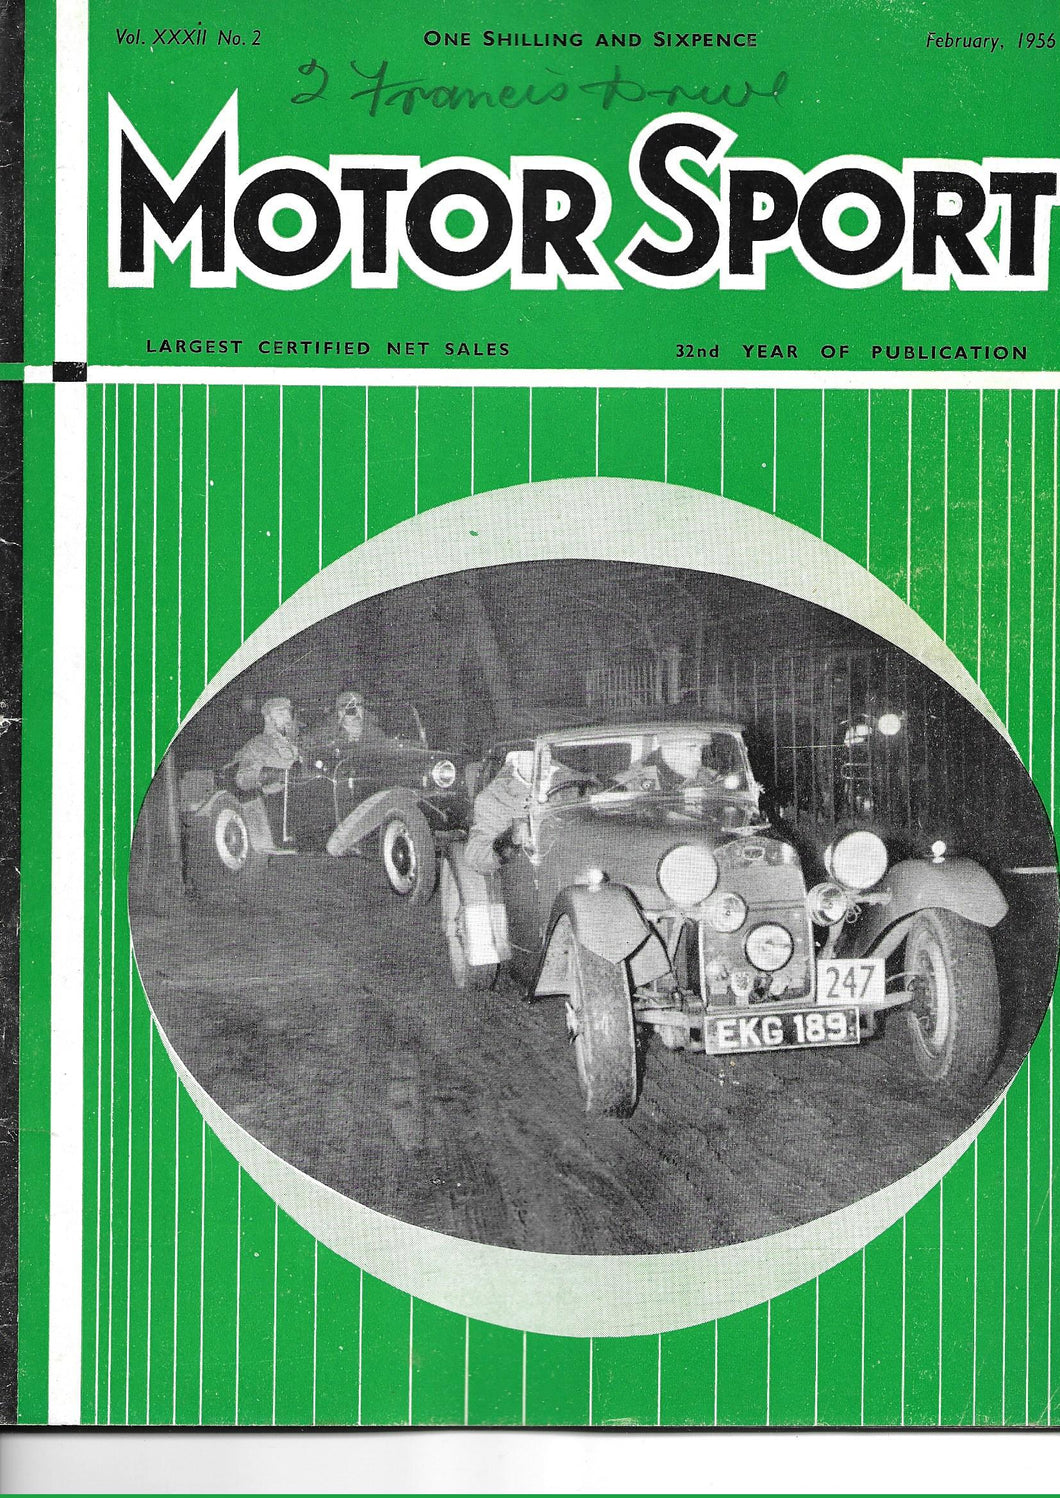 Motor Sport, Magazine, Vol XXXII No 2, February 1956,